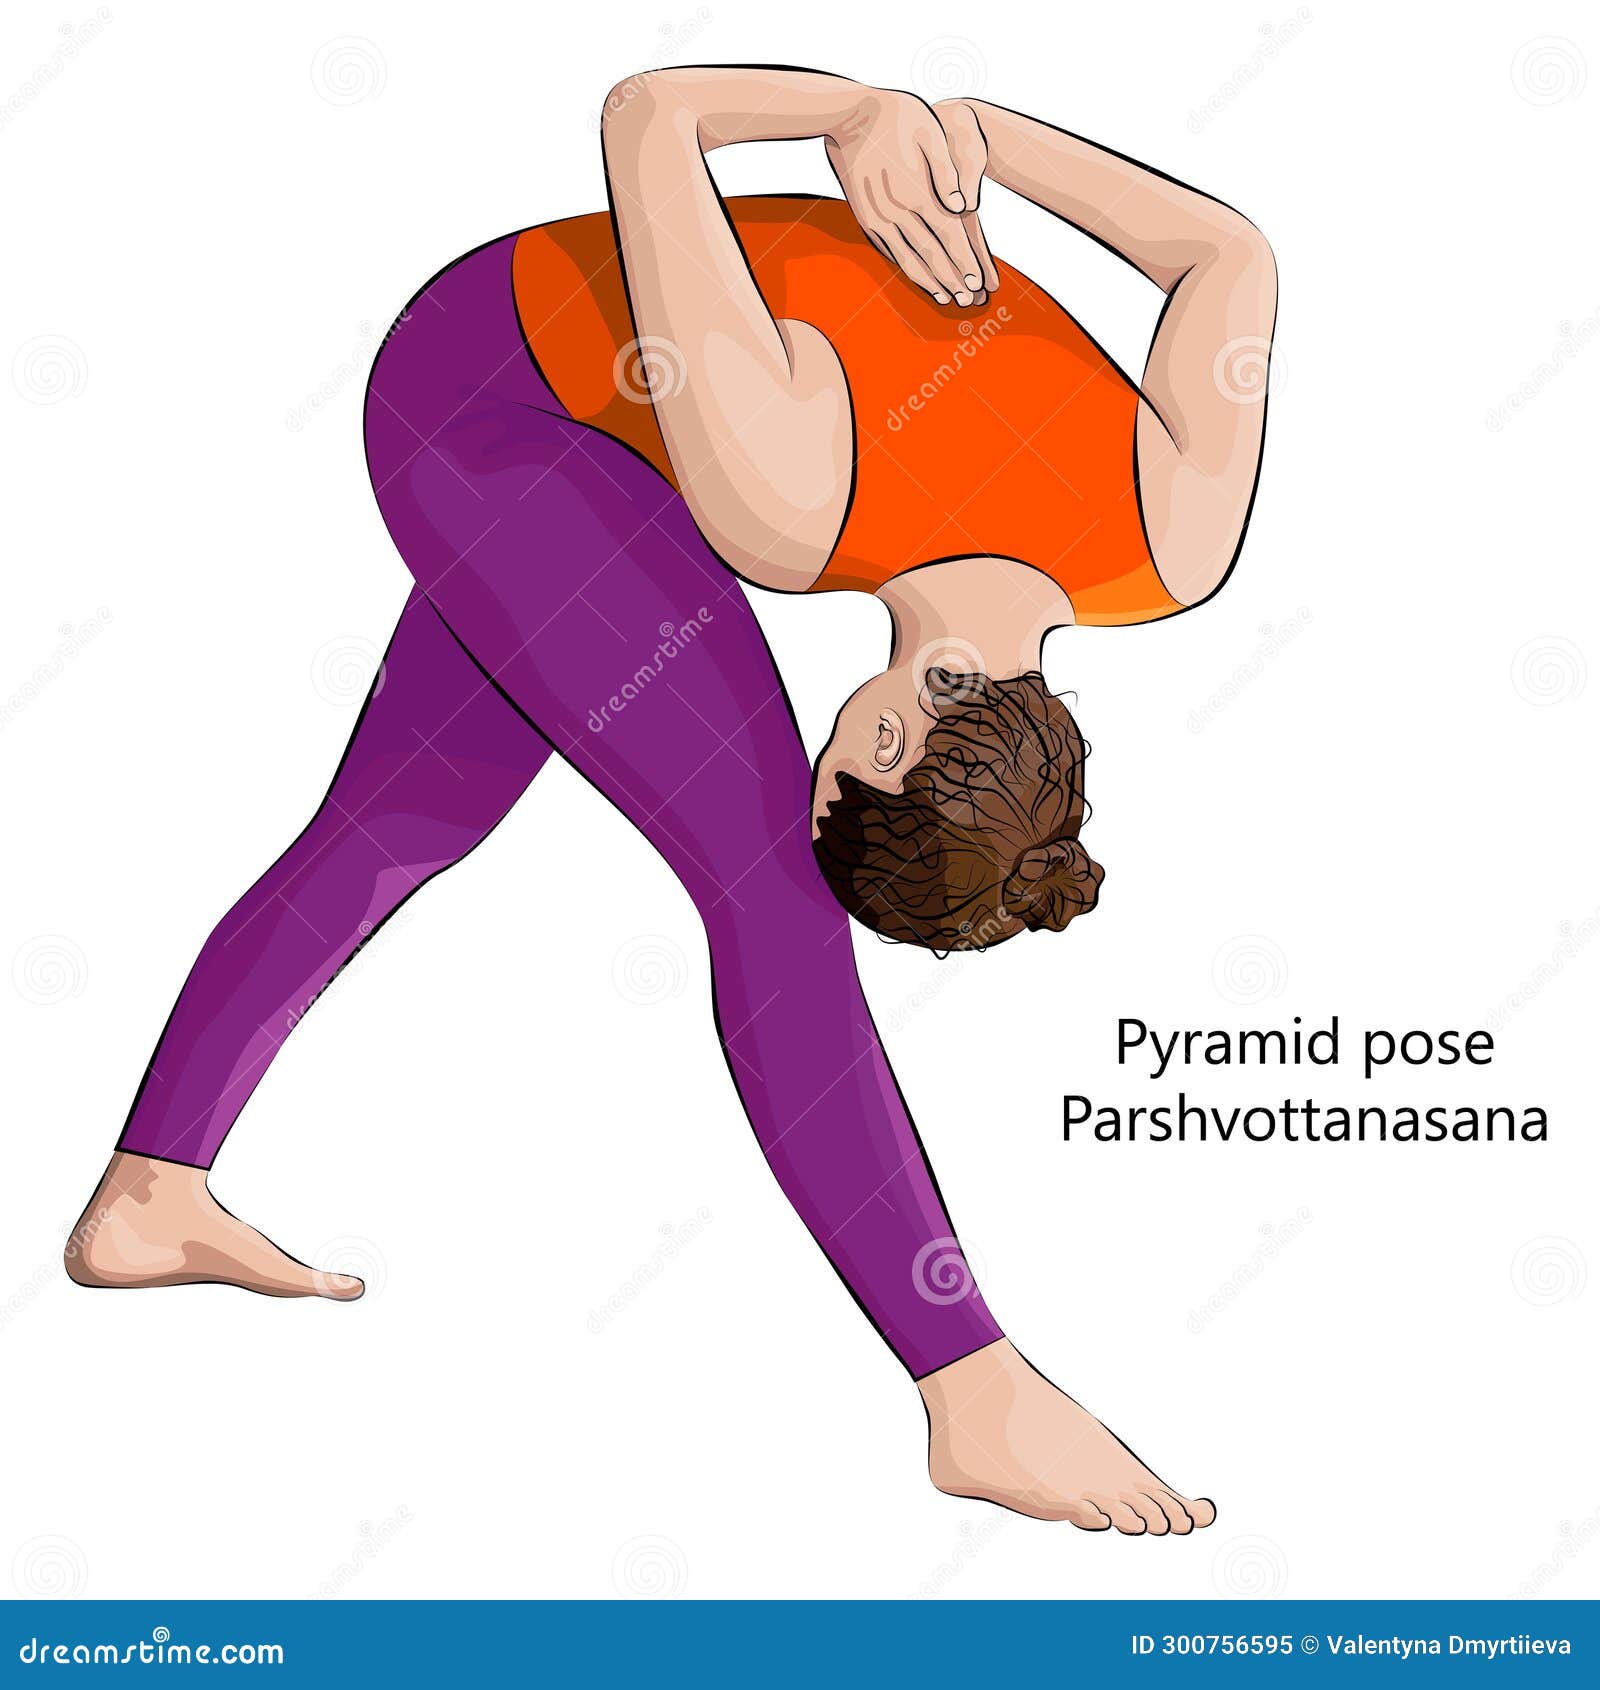 How To Do Pyramid Pose – Brett Larkin Yoga